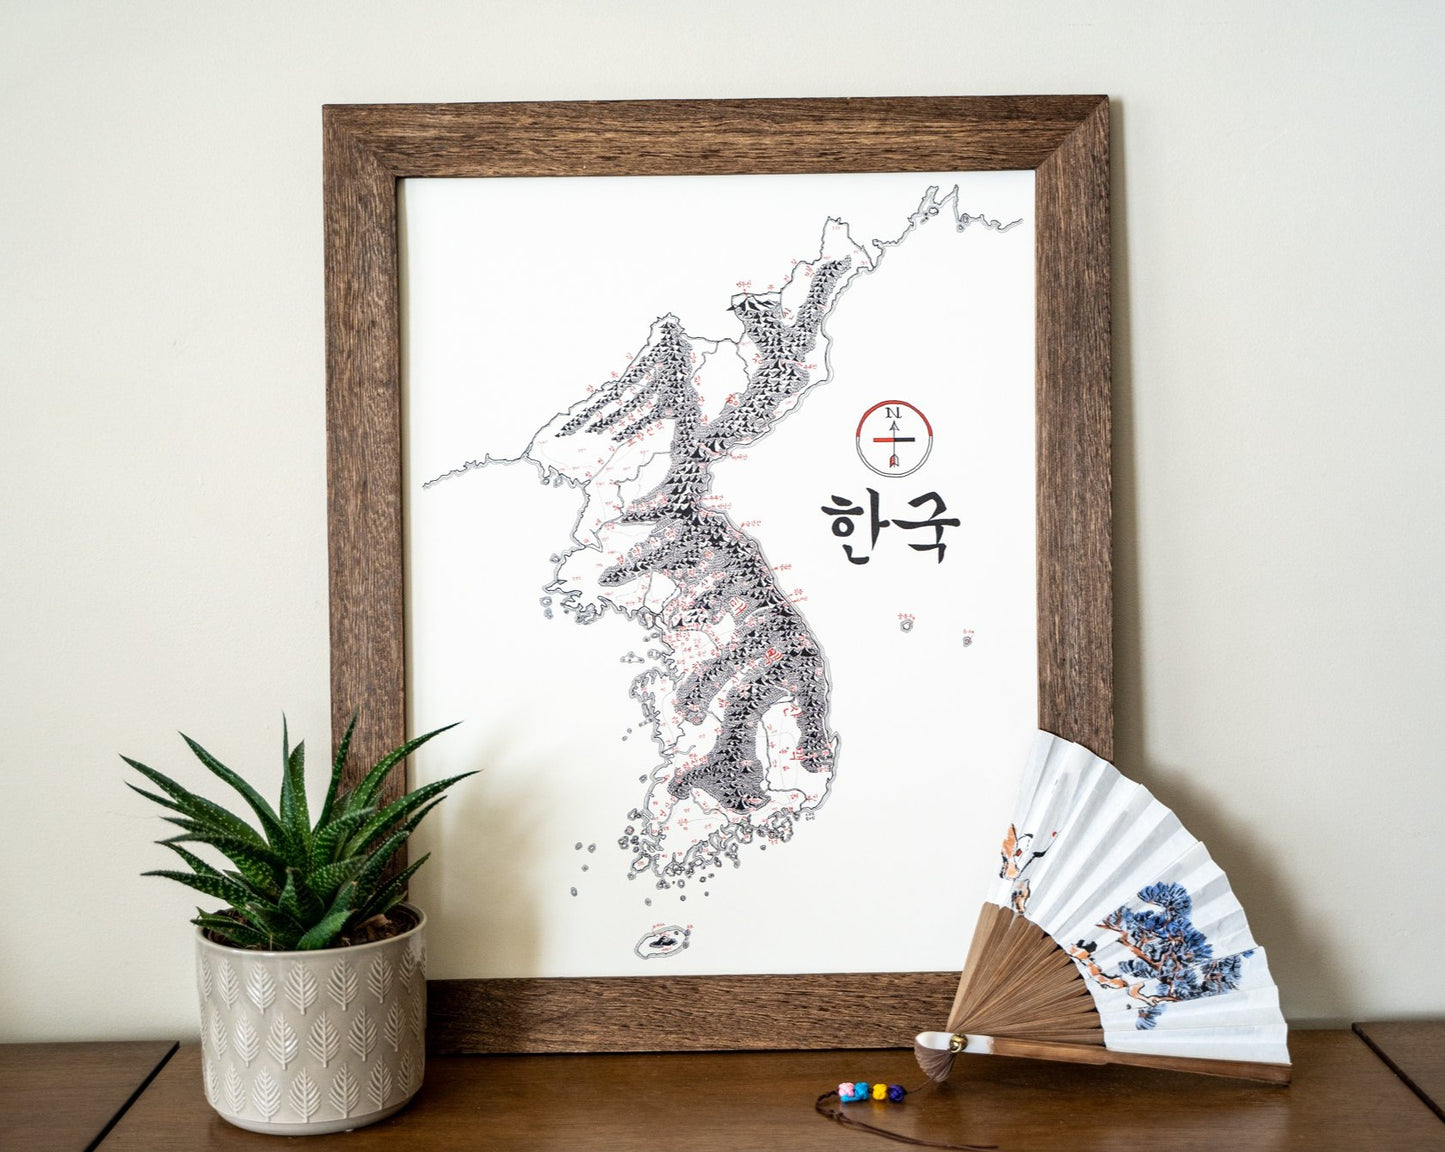 Korea Map